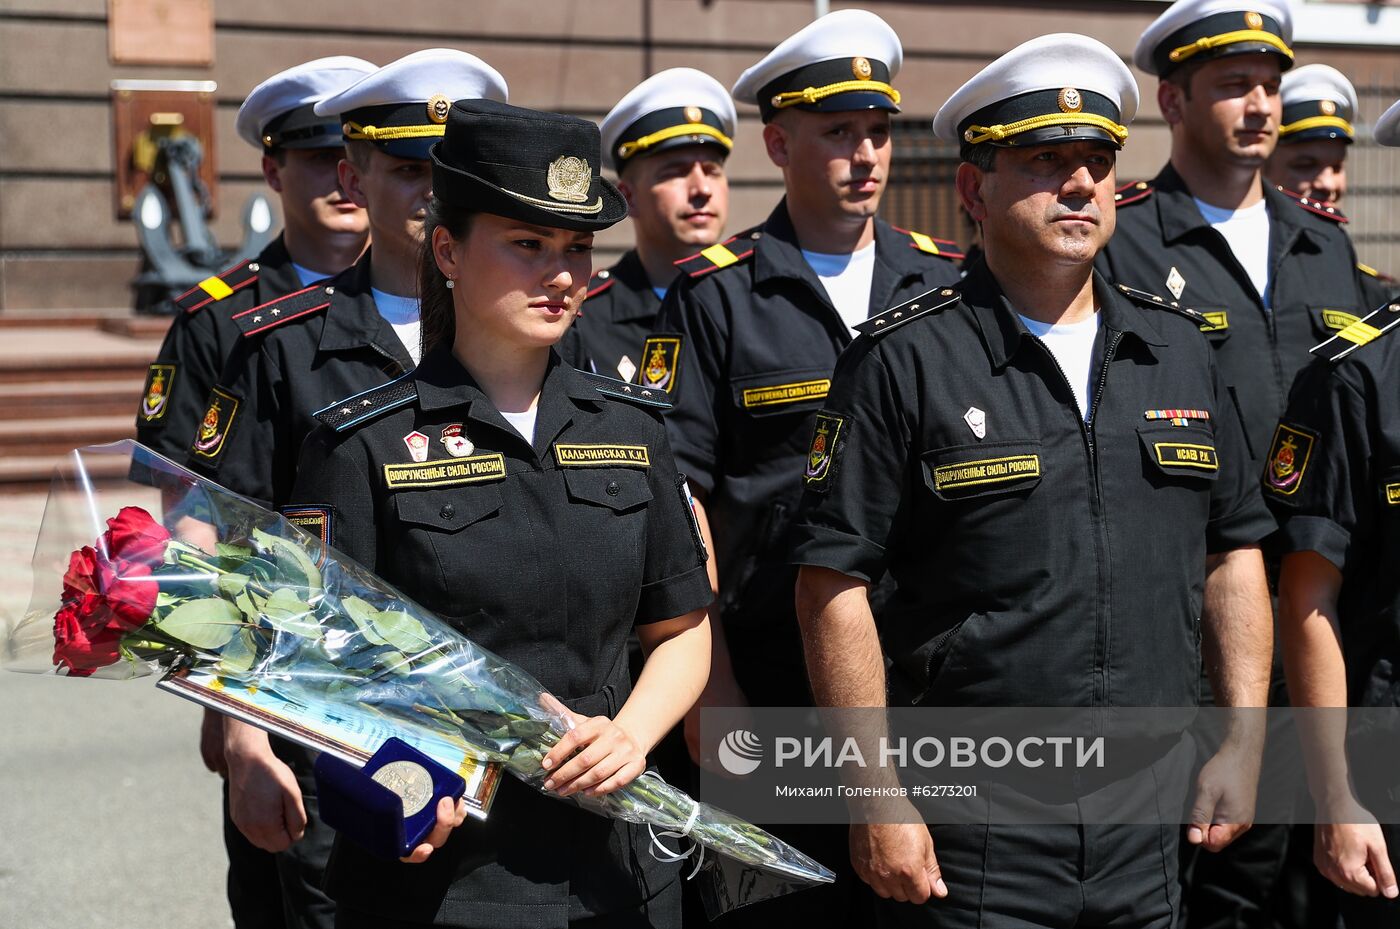 В Калининграде наградили девушку, не покинувшую строй на параде из-за слетевшей туфли